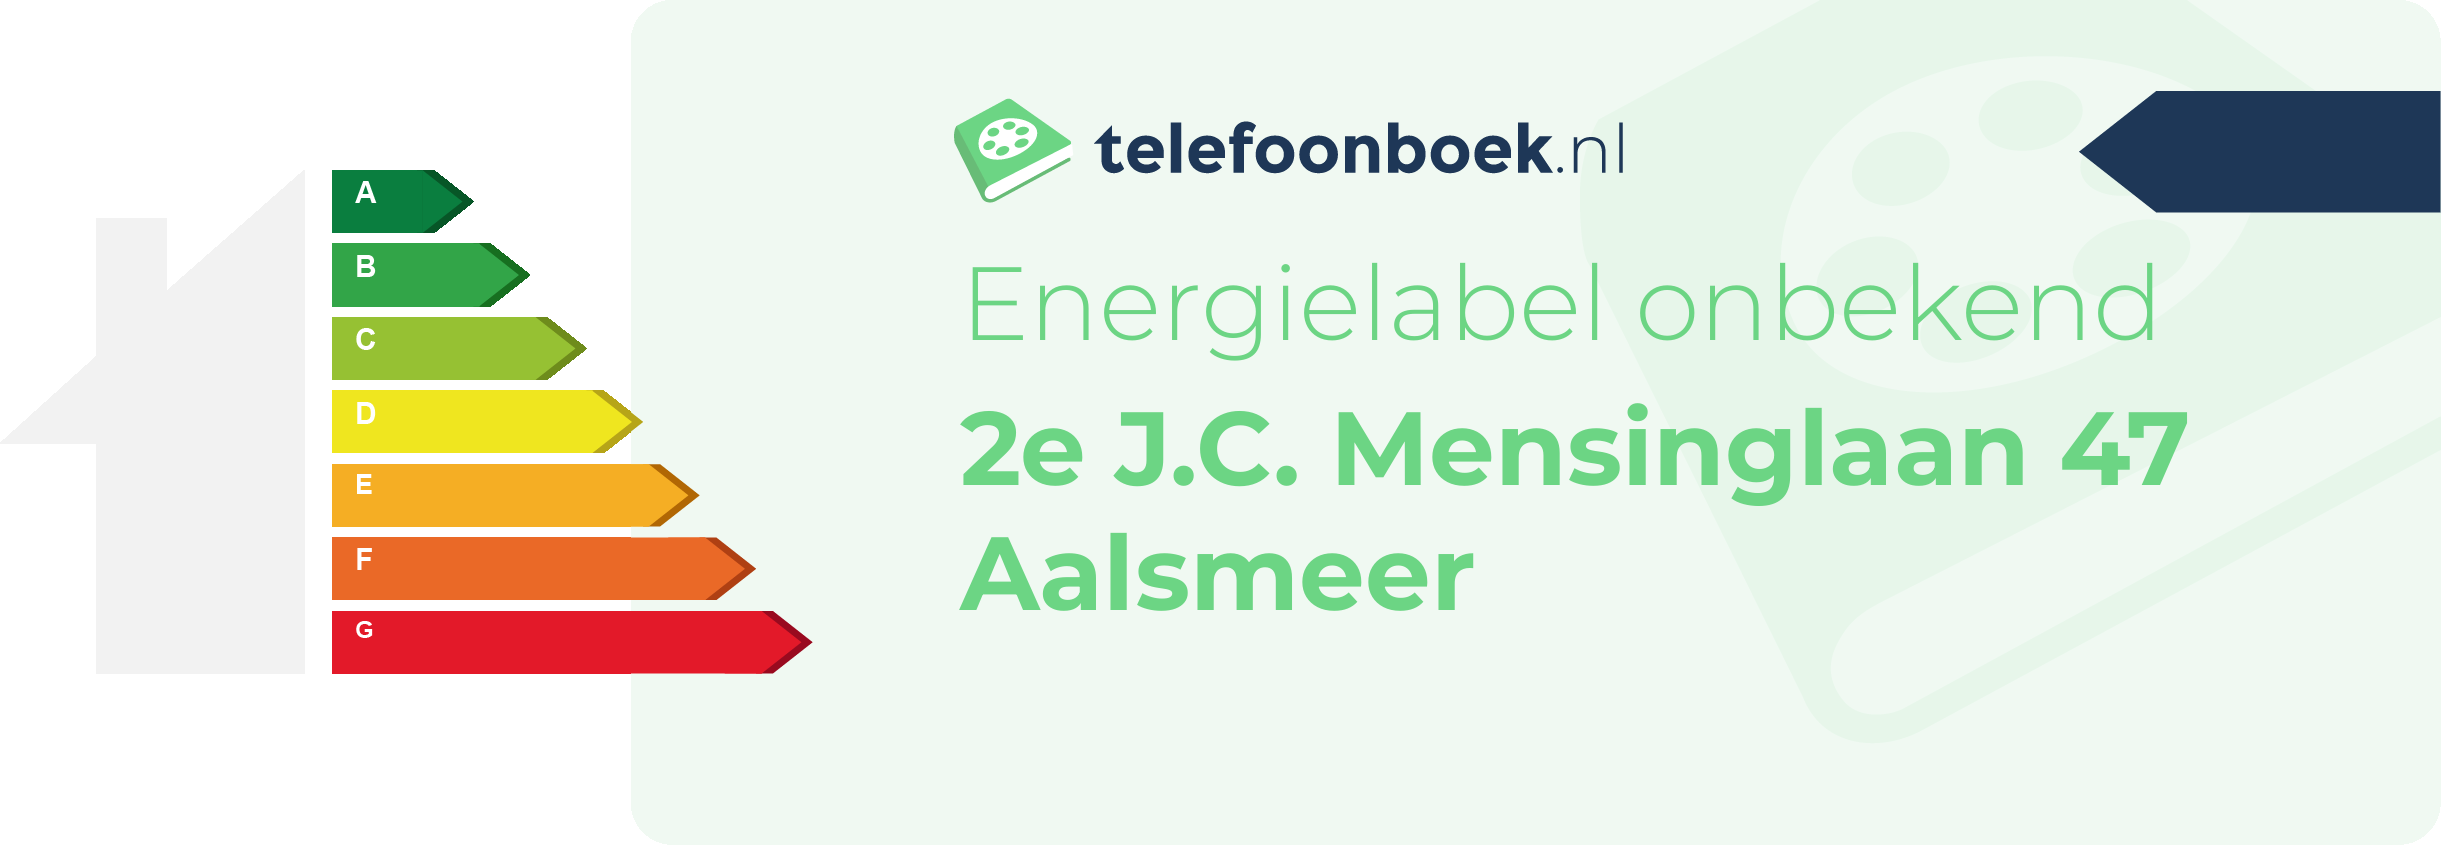 Energielabel 2e J.C. Mensinglaan 47 Aalsmeer